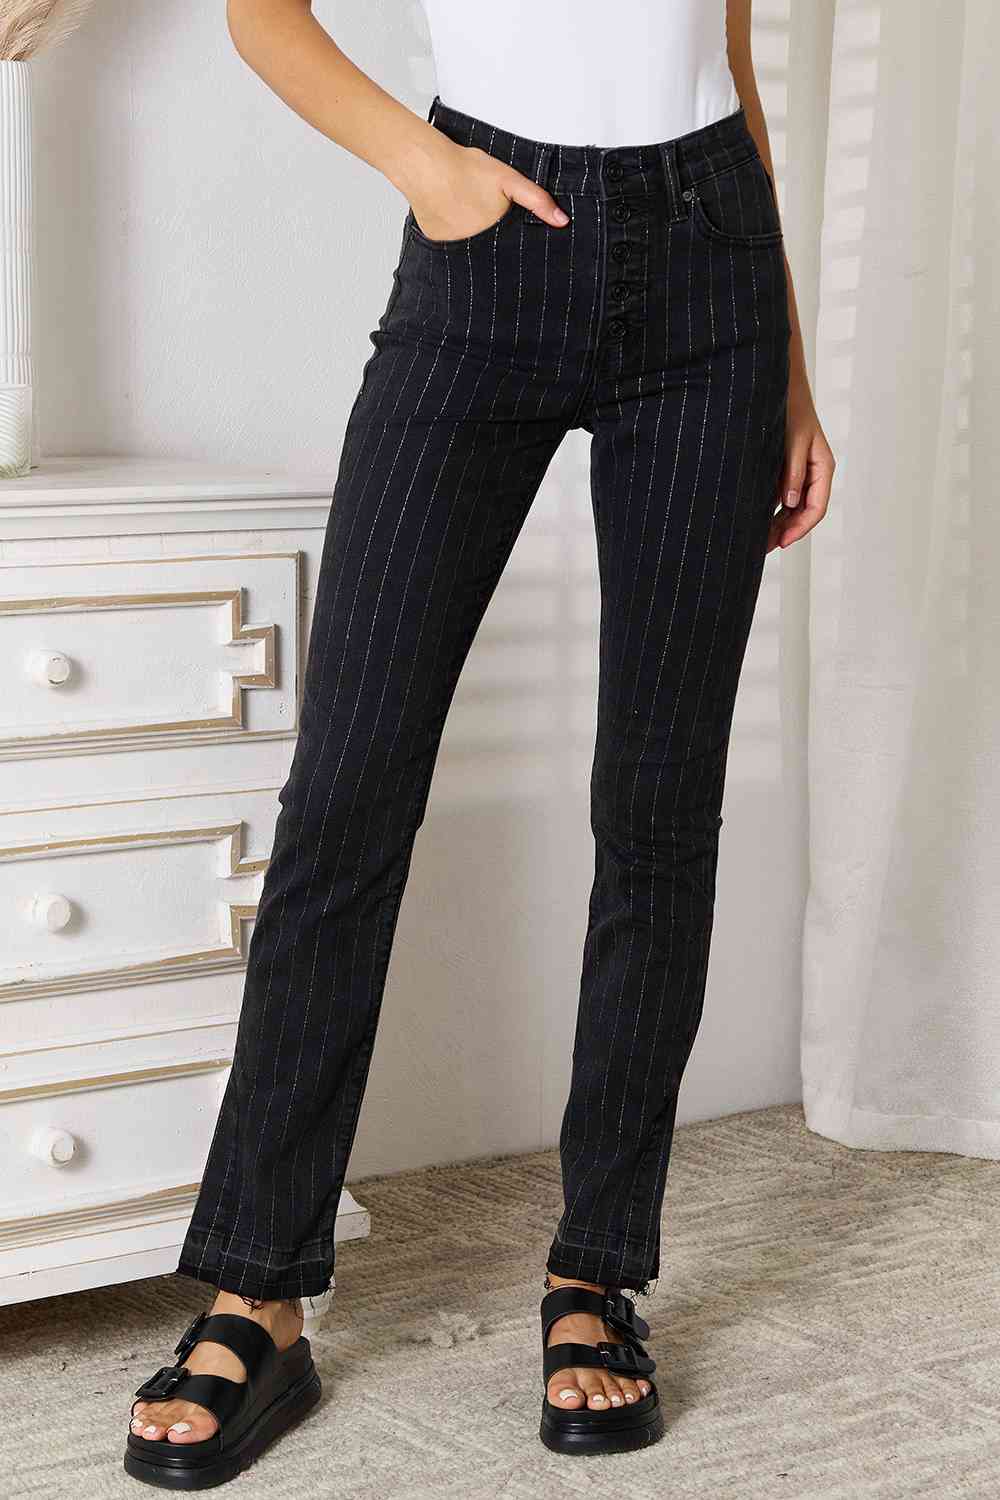 Kancan Black Striped Pants with Pockets jeans jehouze Black 1(24) 